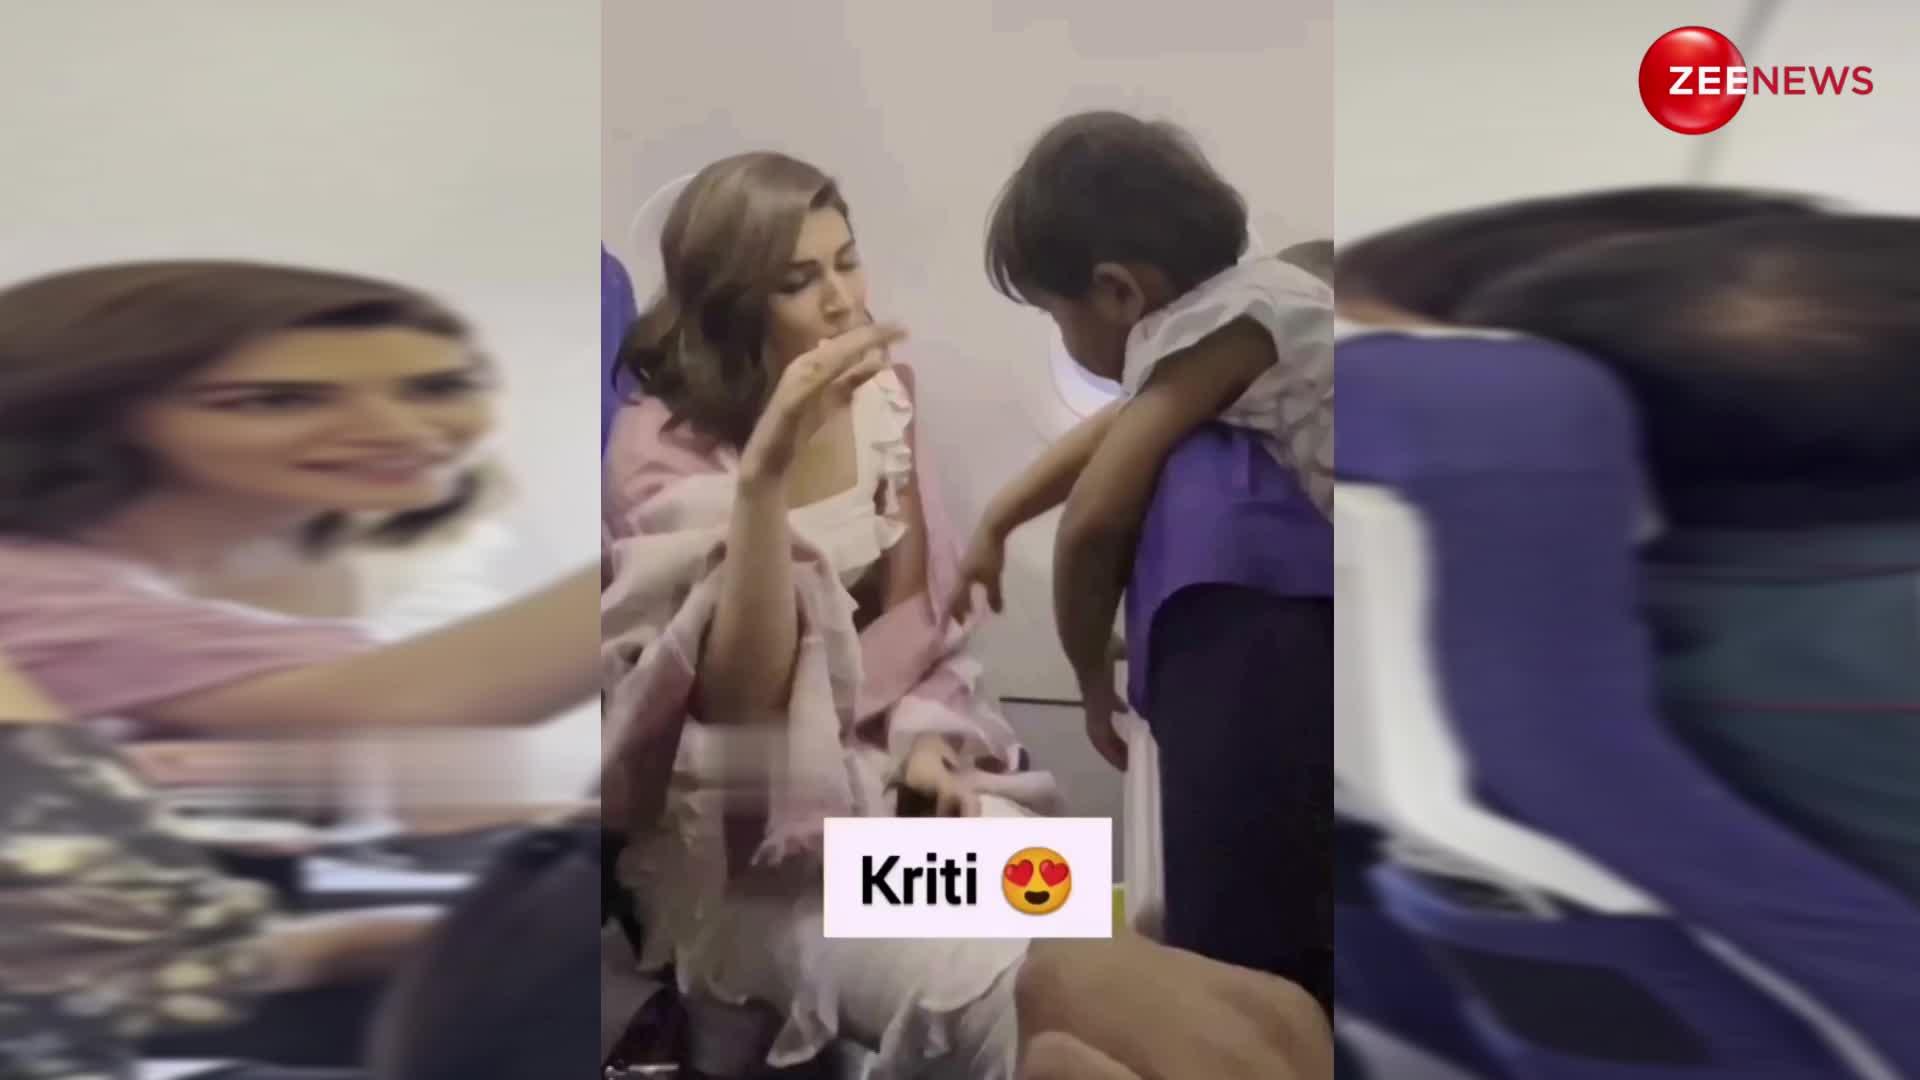 फ्लाइट में Kriti Sanon ने छोटी सी बच्ची के साथ जमकर की मस्ती, वायरल हुआ वीडियो